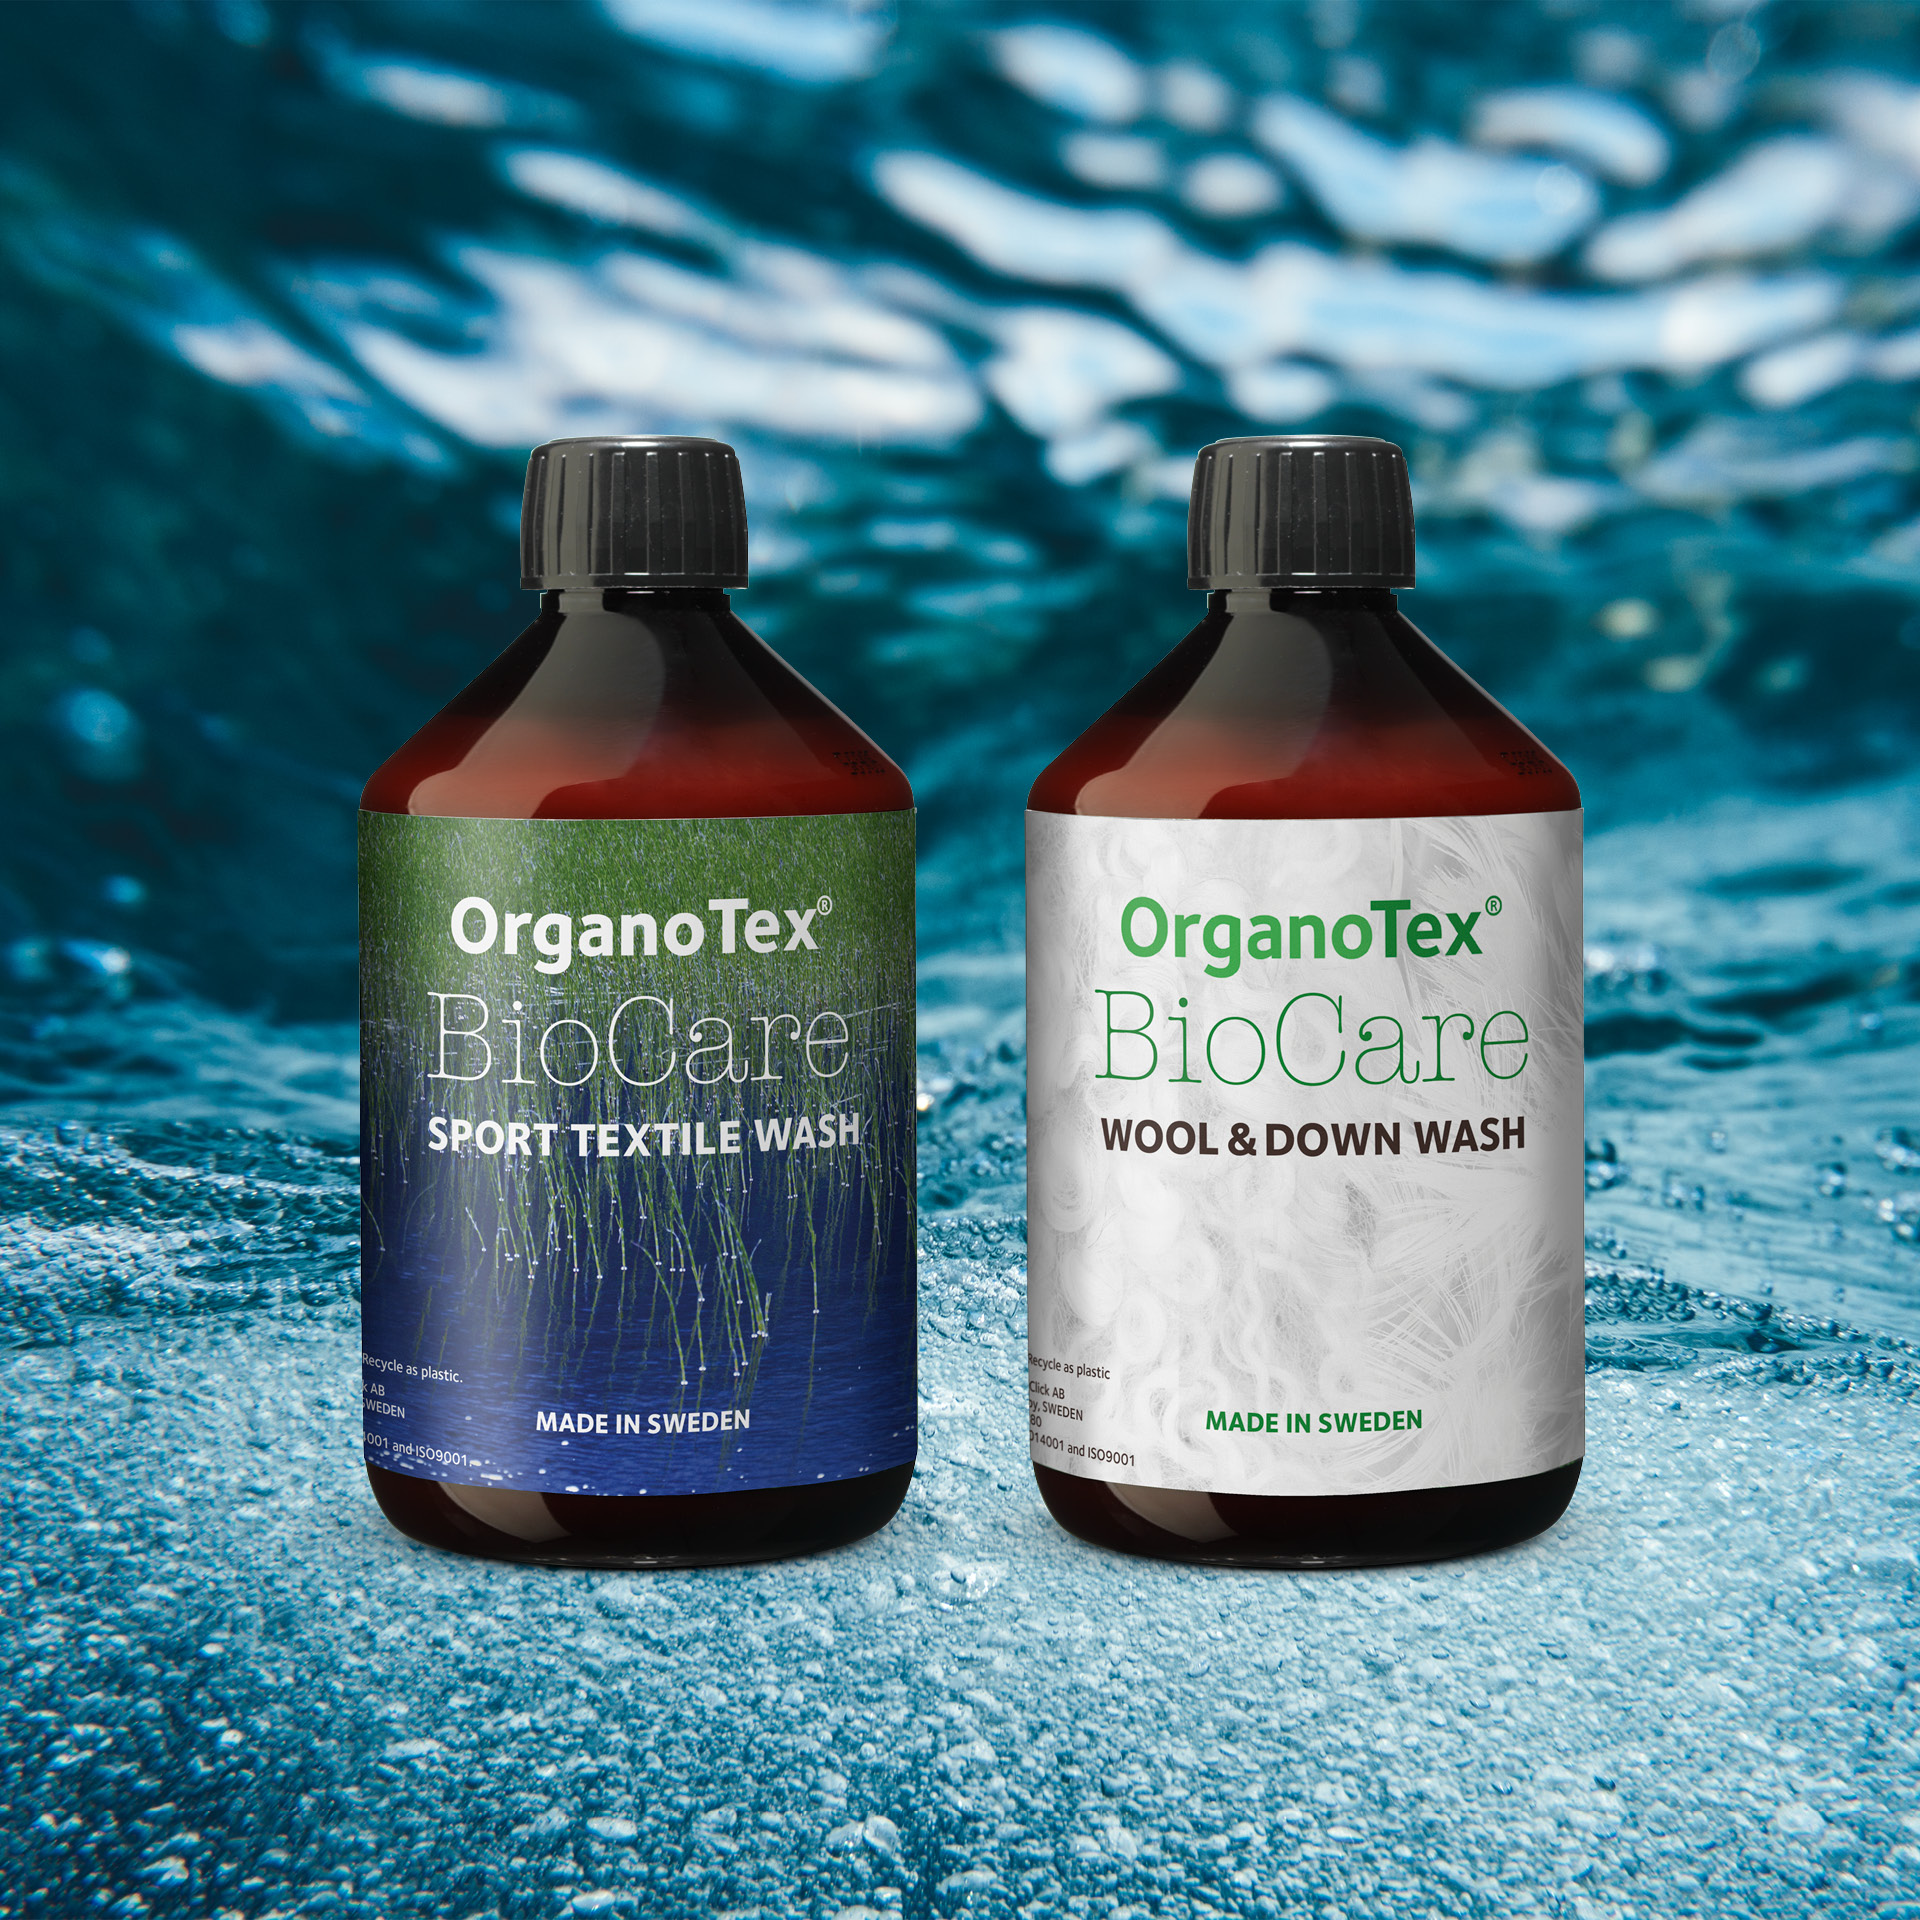 OrganoTex tvättmedel för sportkläder, ylle och dun